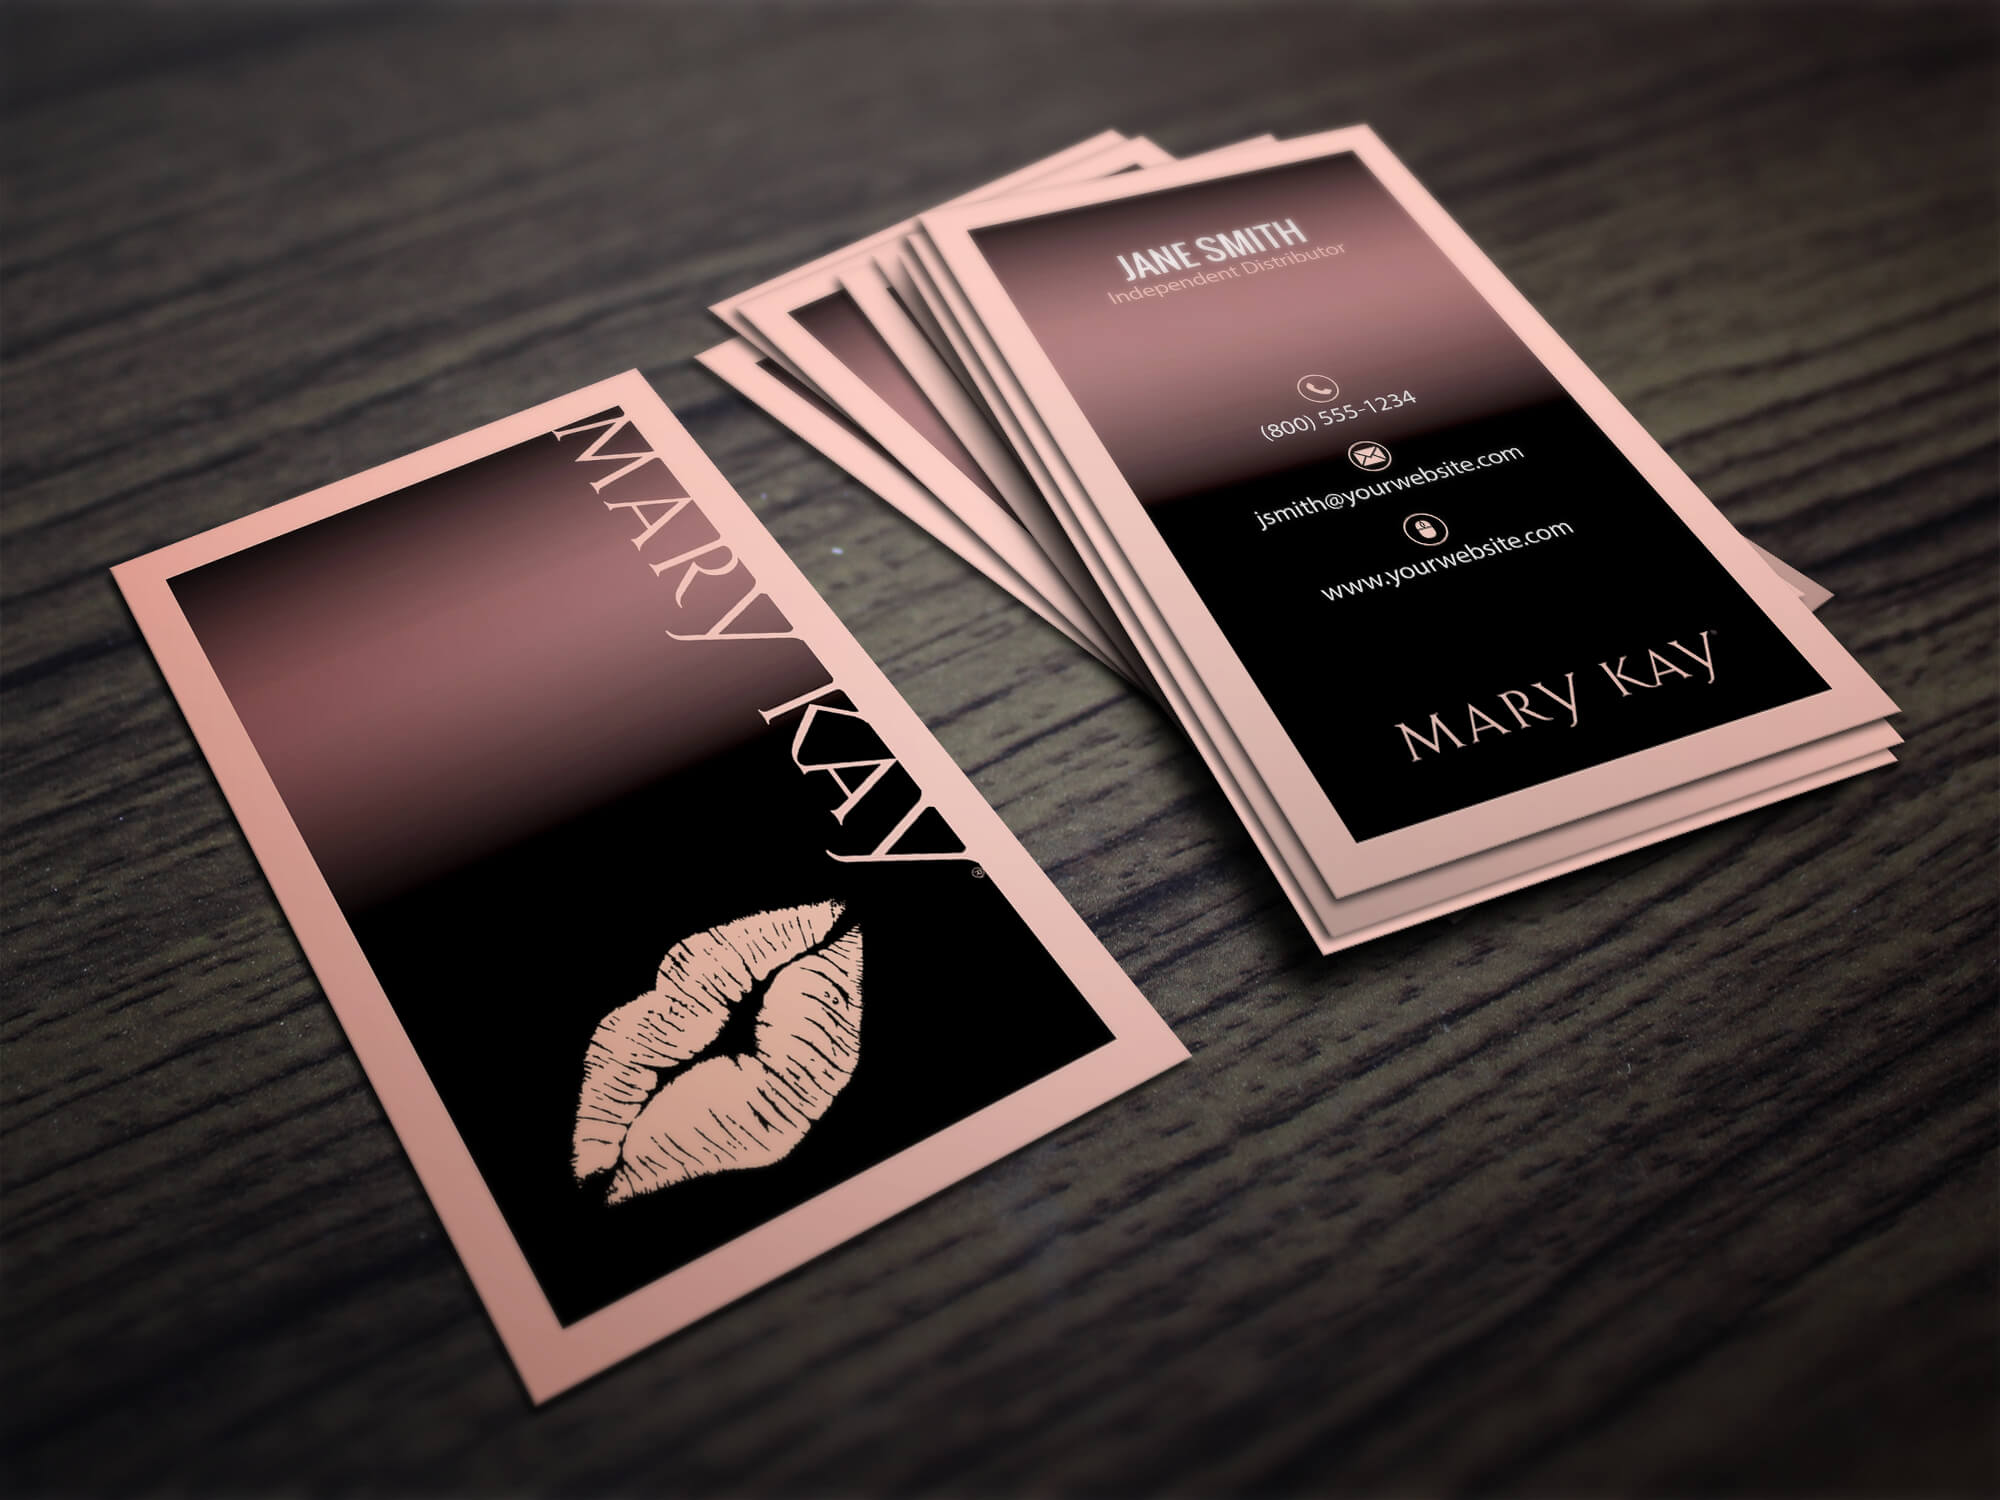 Mary Kay Business Cards | Mary Kay Party, Mary Kay, Mary Kay With Mary Kay Business Cards Templates Free